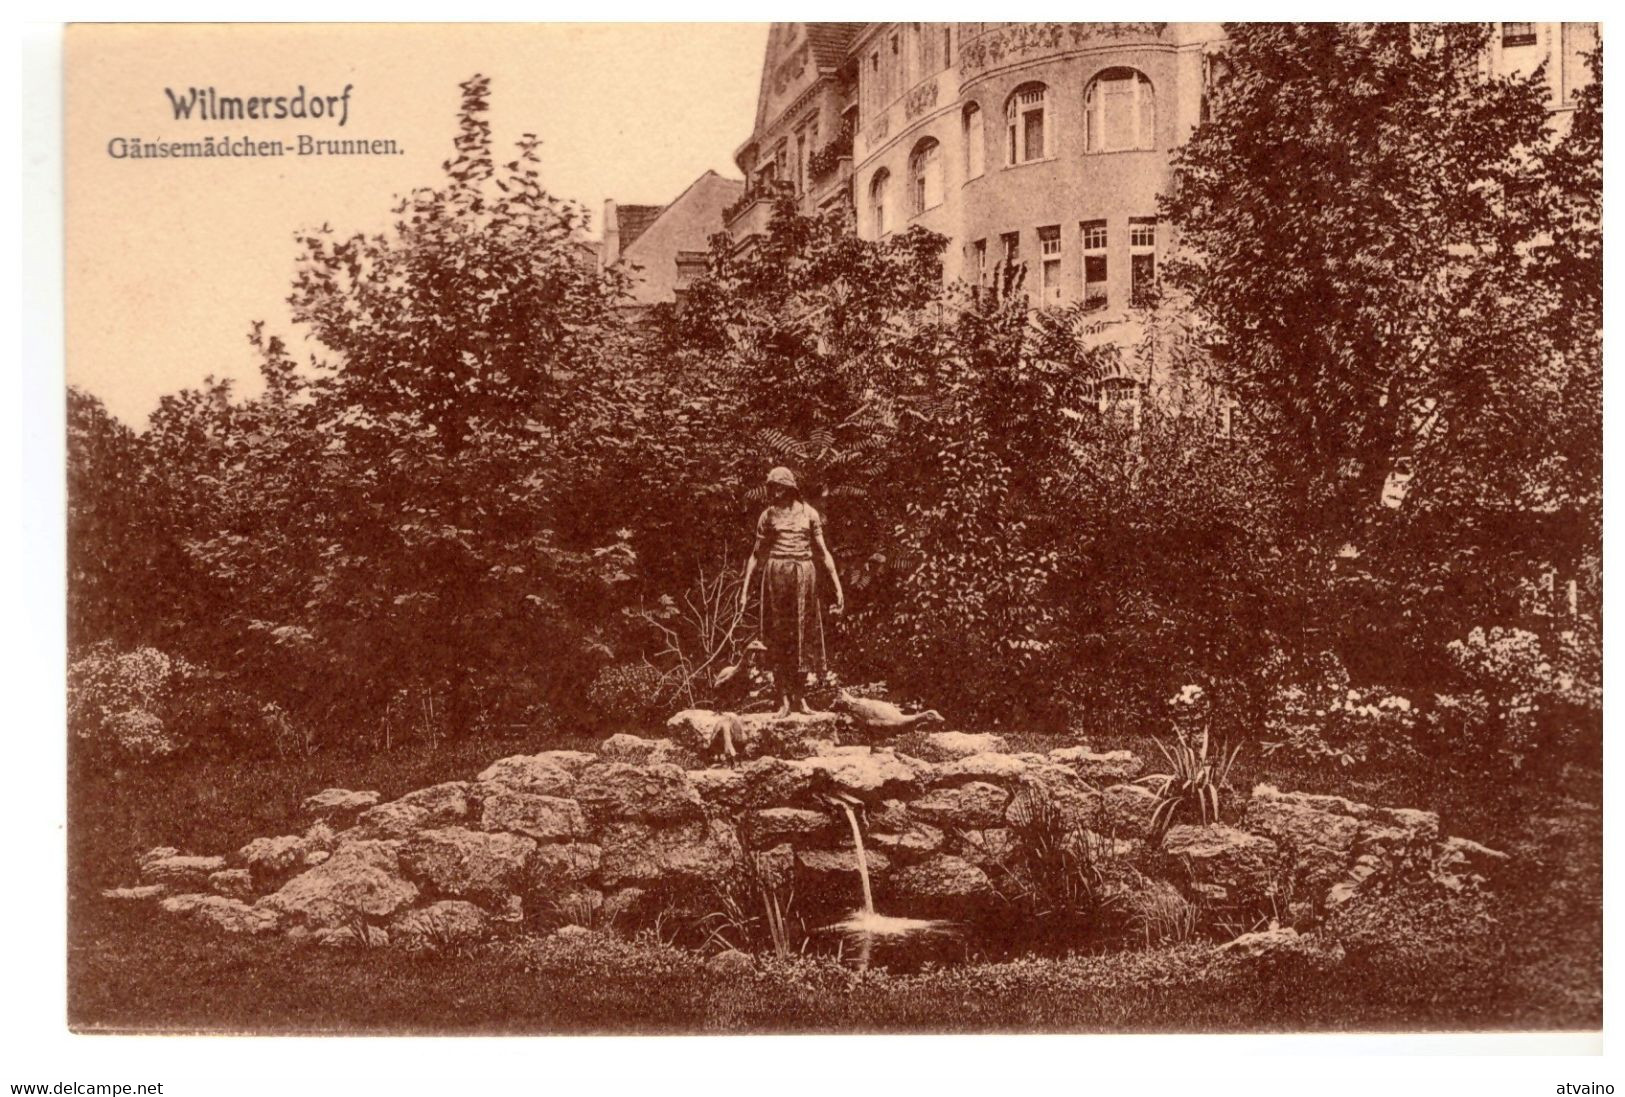 Germany Deutsche WILMERSDOR VINTAGE PHOTO POSTCARD - 1900s - Wilmersdorf